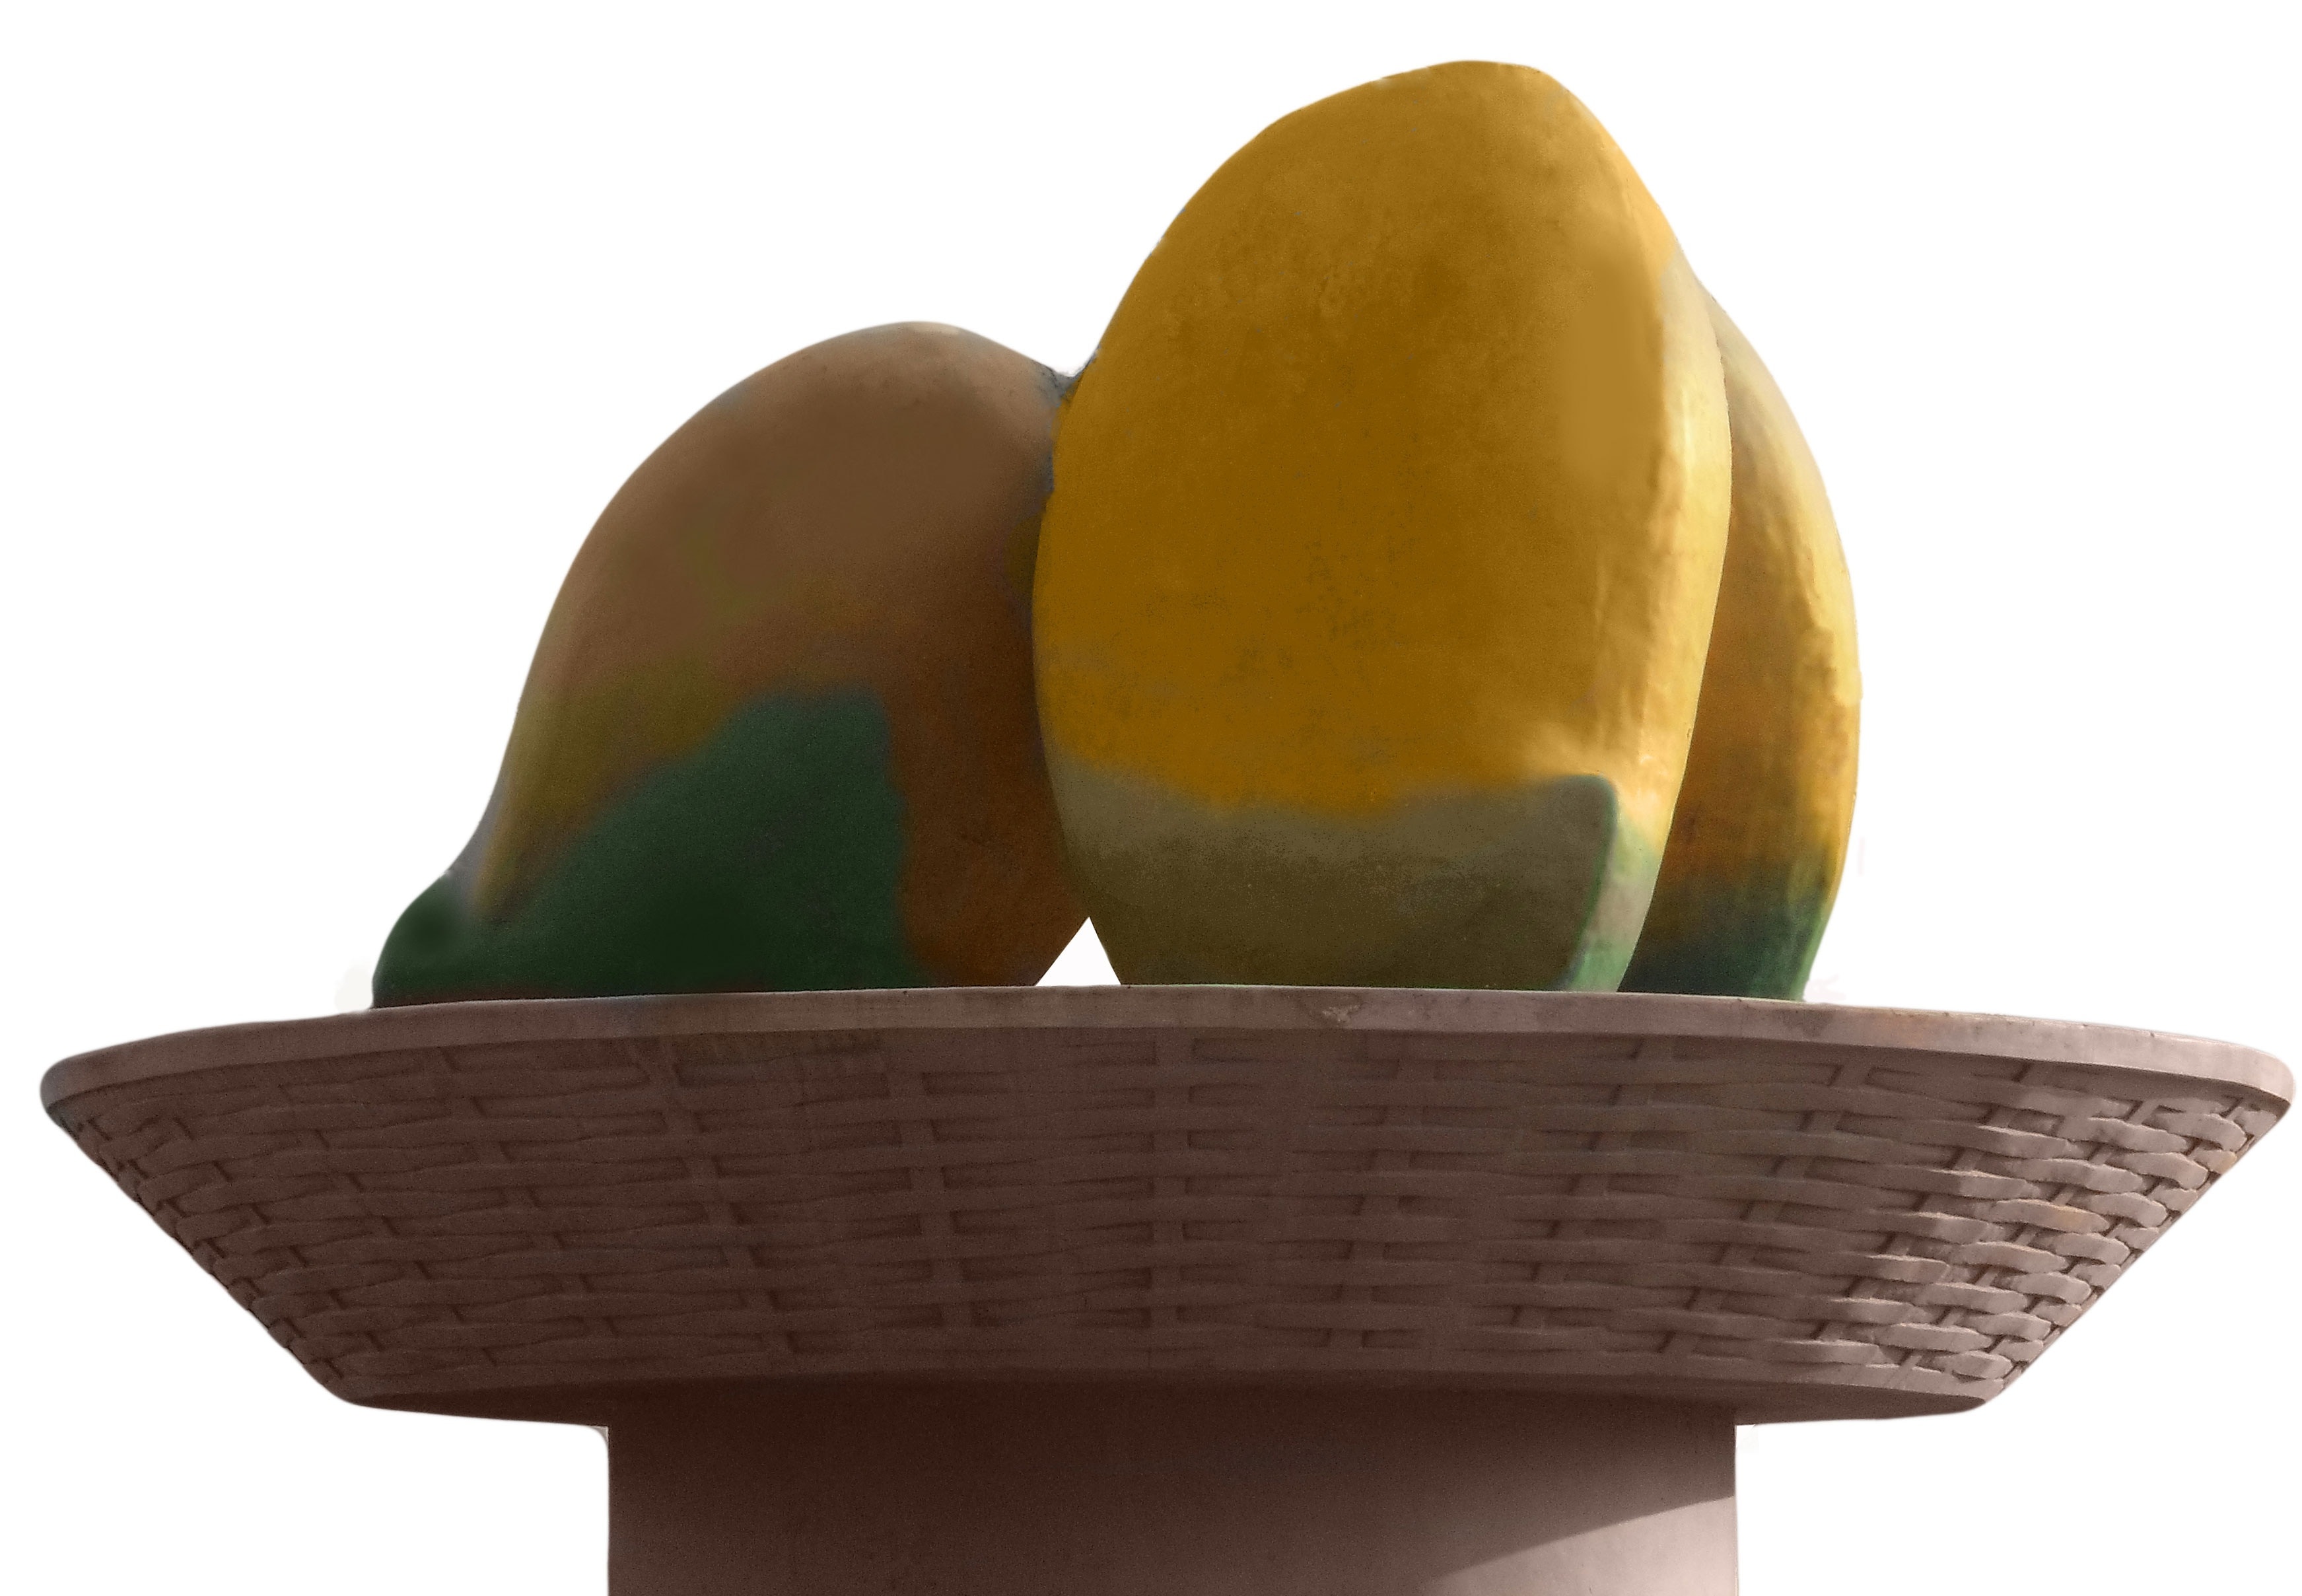 artificial yellow-green mango fruit in brown woven fruit bowl